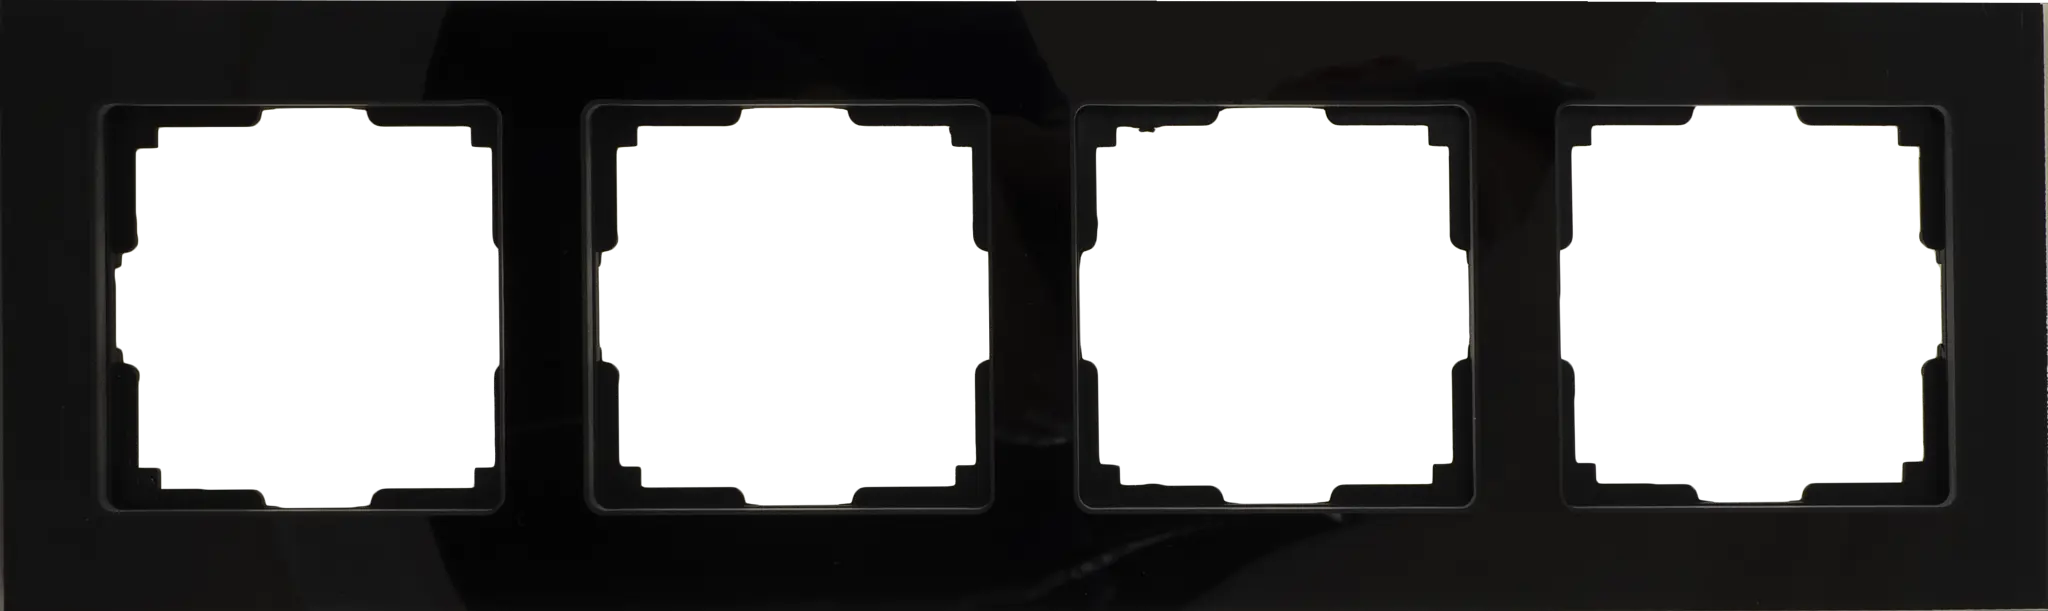 Рамка для розеток и выключателей Werkel Favorit 4 поста стекло цвет чёрный рамка эра 14 5204 05 на 4 поста металл elegance чёрный антрацит б0034561